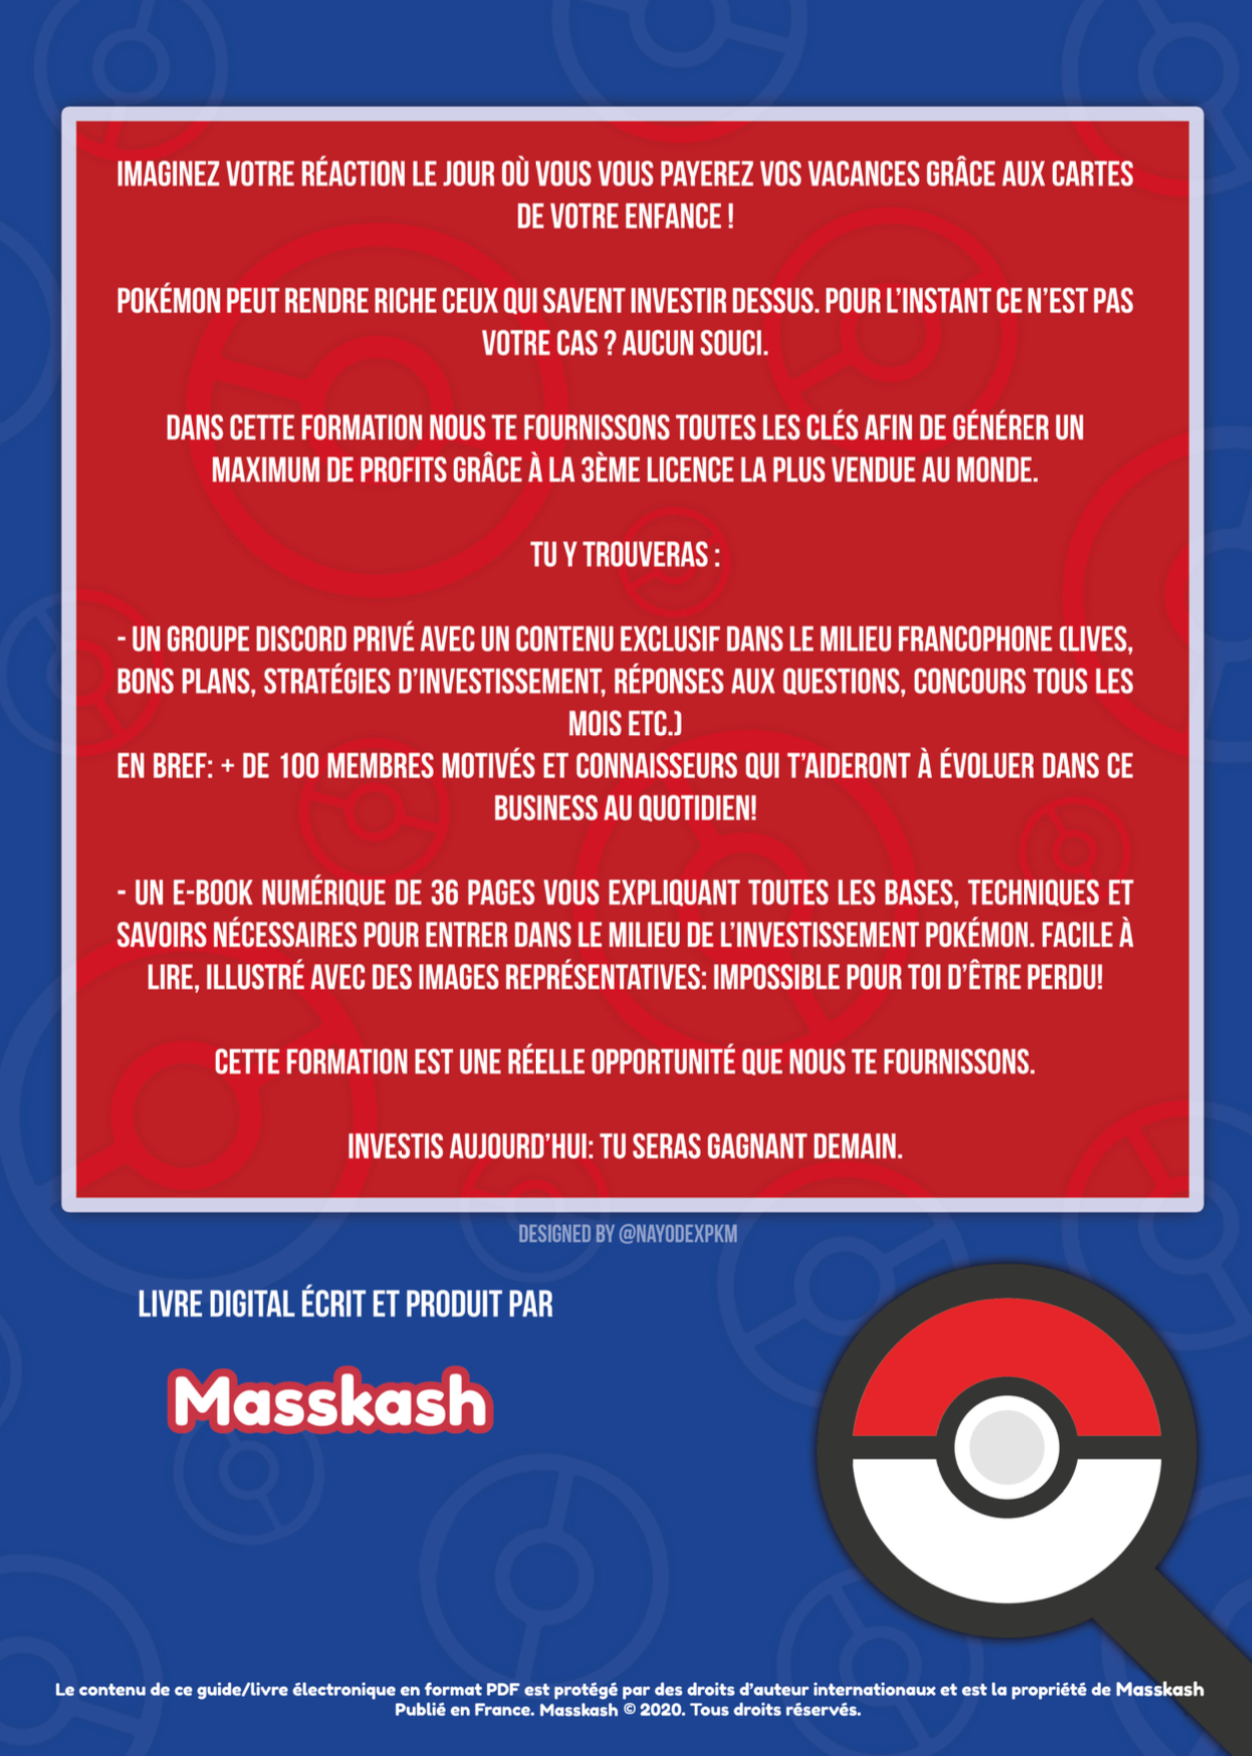 Livre numérique Les Secrets du Business Pokémon – Les Secrets du Business  de Cartes Pokemon